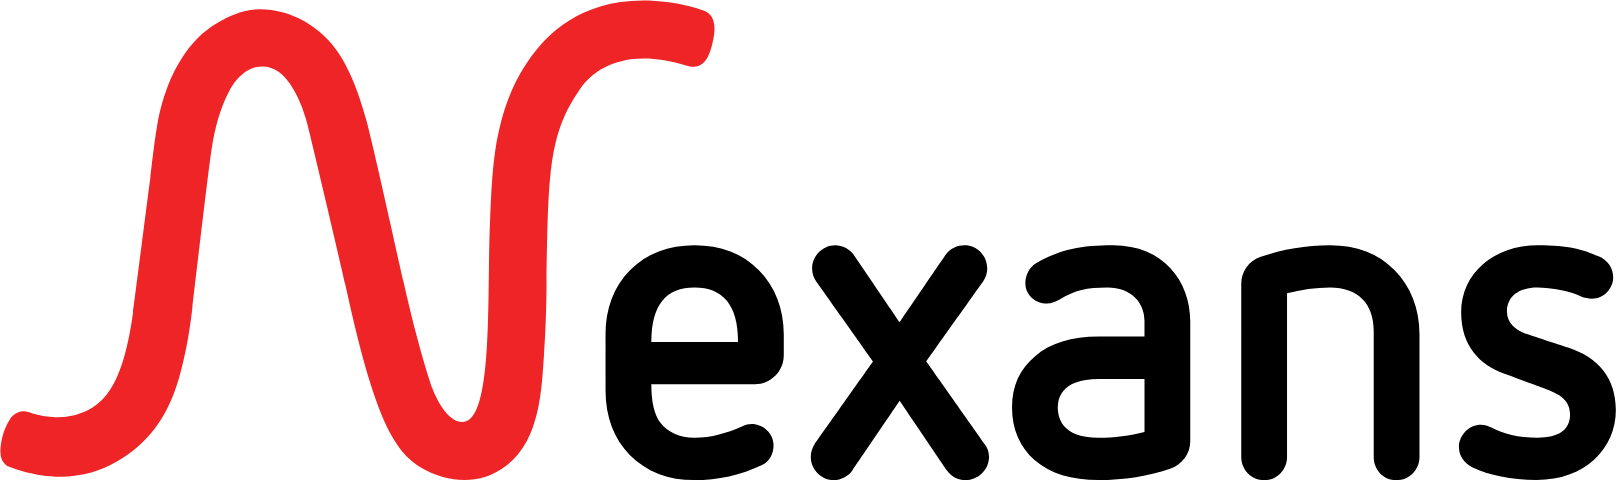 Nexans logo large (transparent PNG)